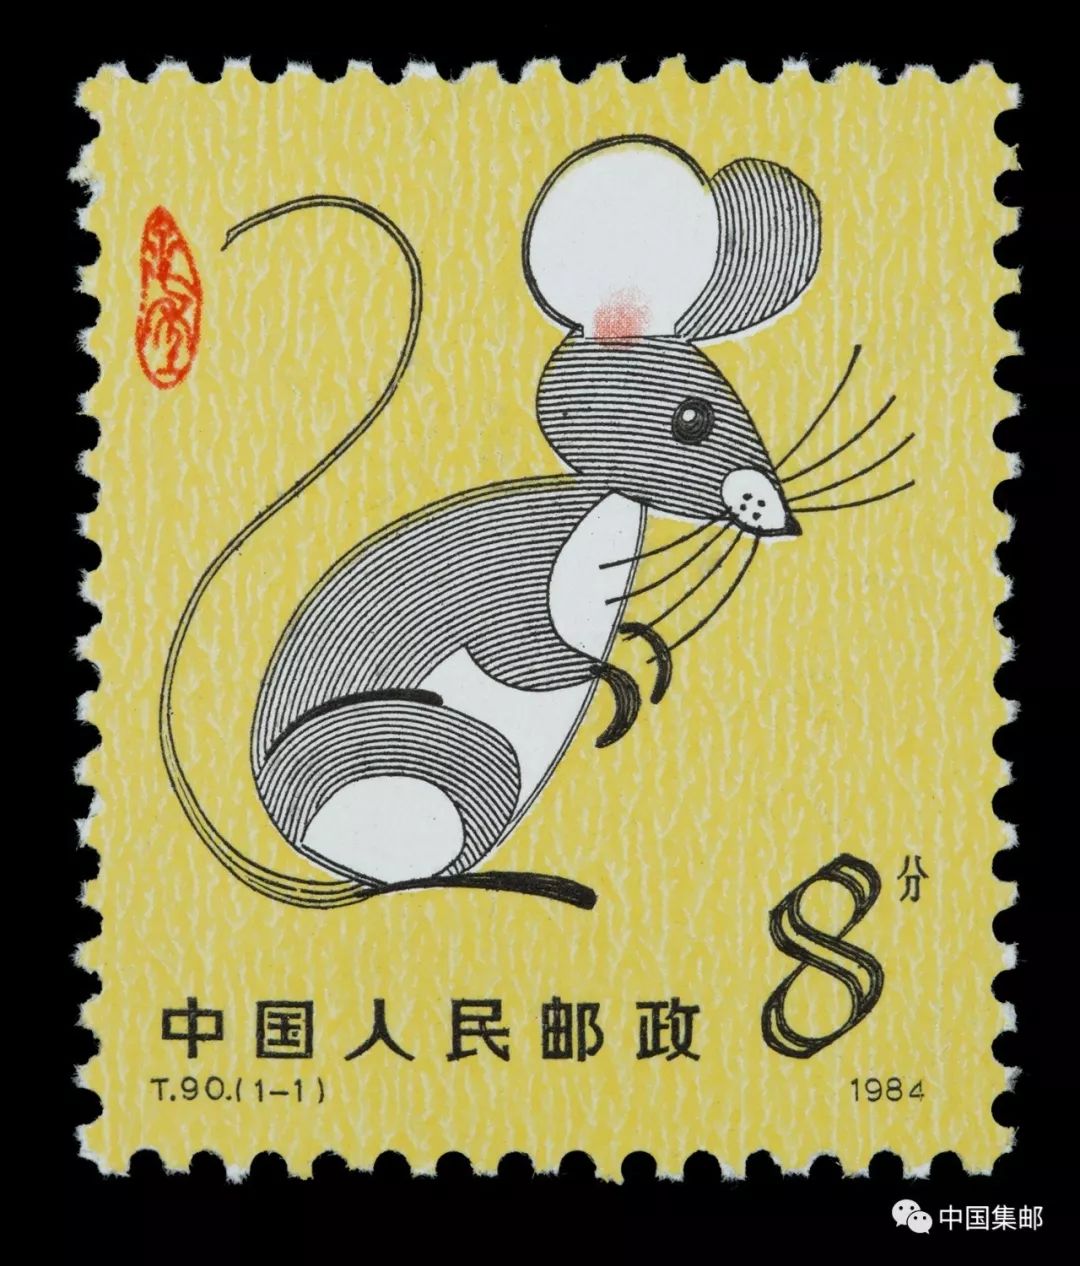 为什么老鼠会排生肖第一 子 鼠的含义是什么 上海市集邮总公司 微信公众号文章阅读 Wemp